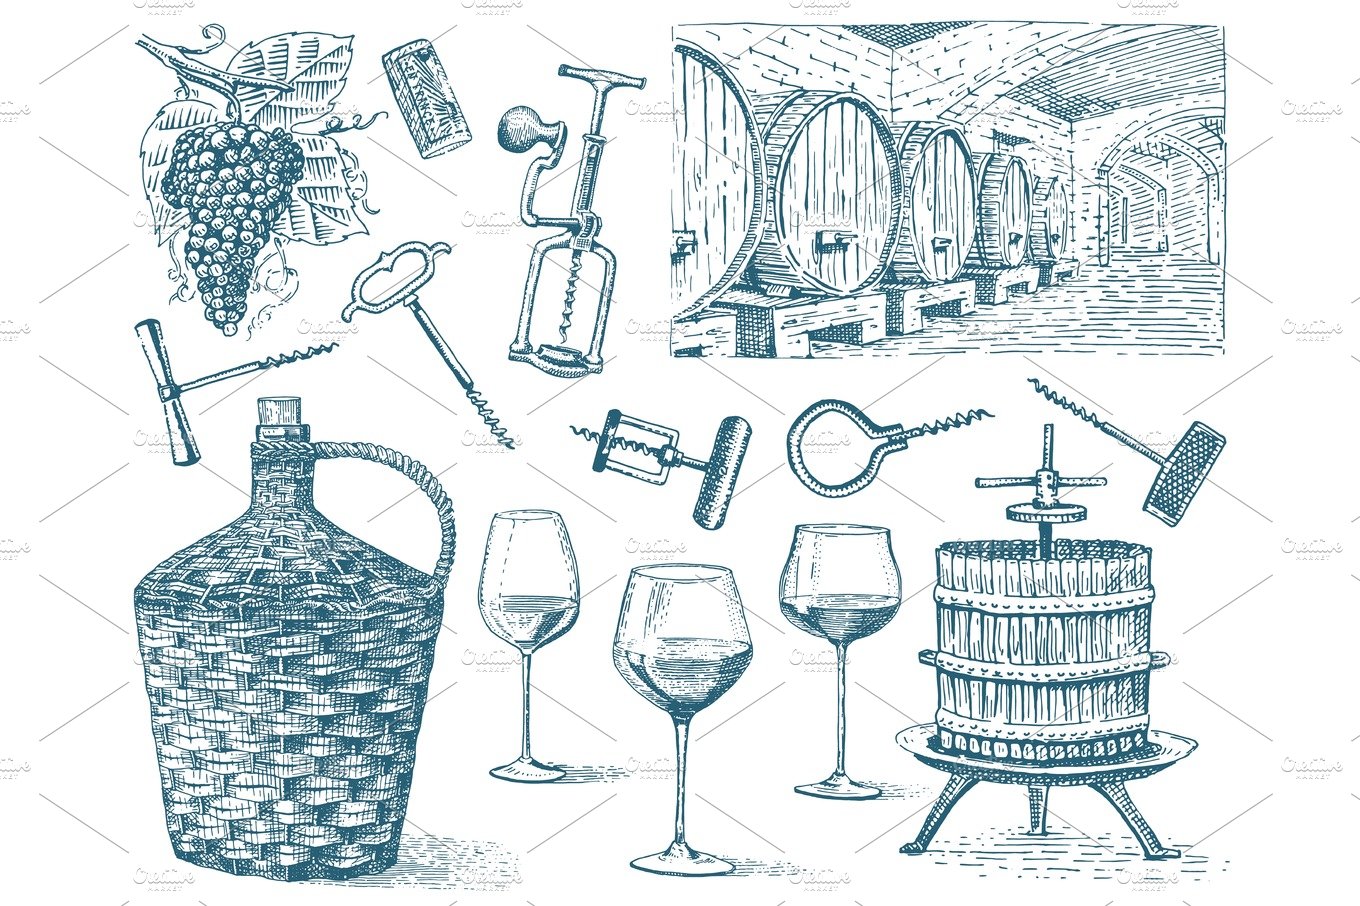 wine harvest products, press, grapes, vineyards corkscrews glasses bottles ... cover image.